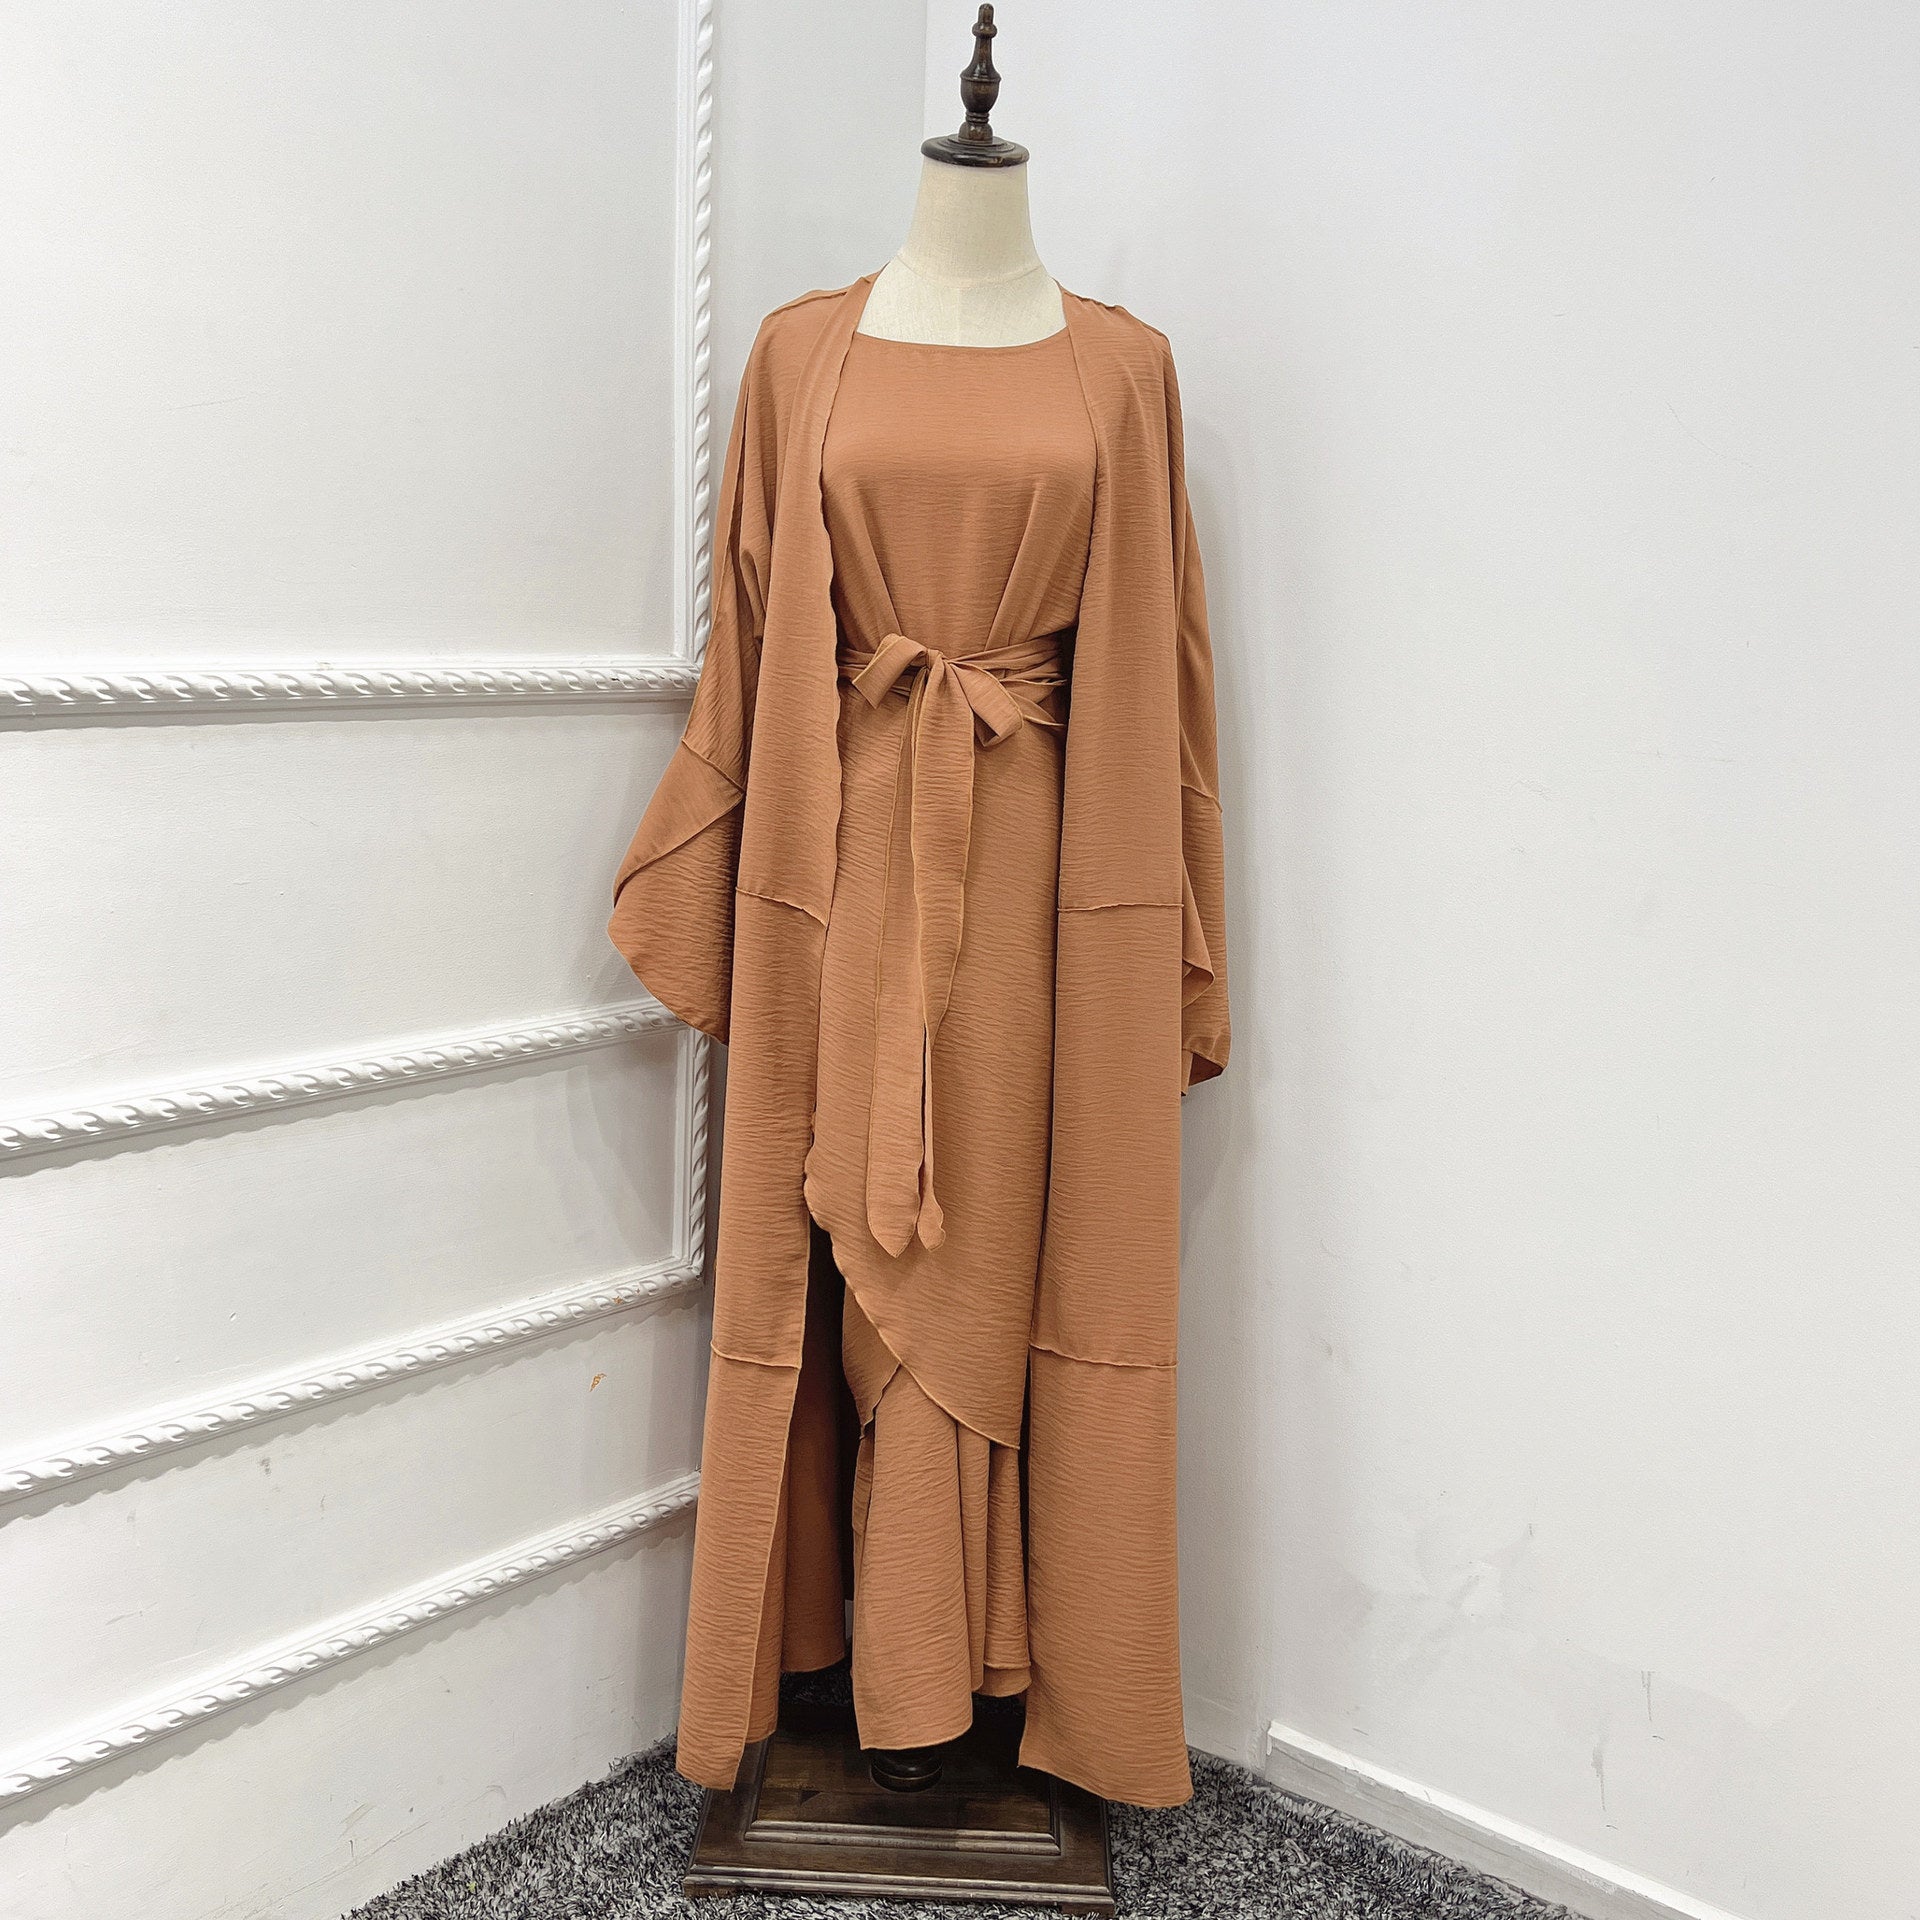 Inner Cotton Blend Wear Dress Skirt Three-piece Suit